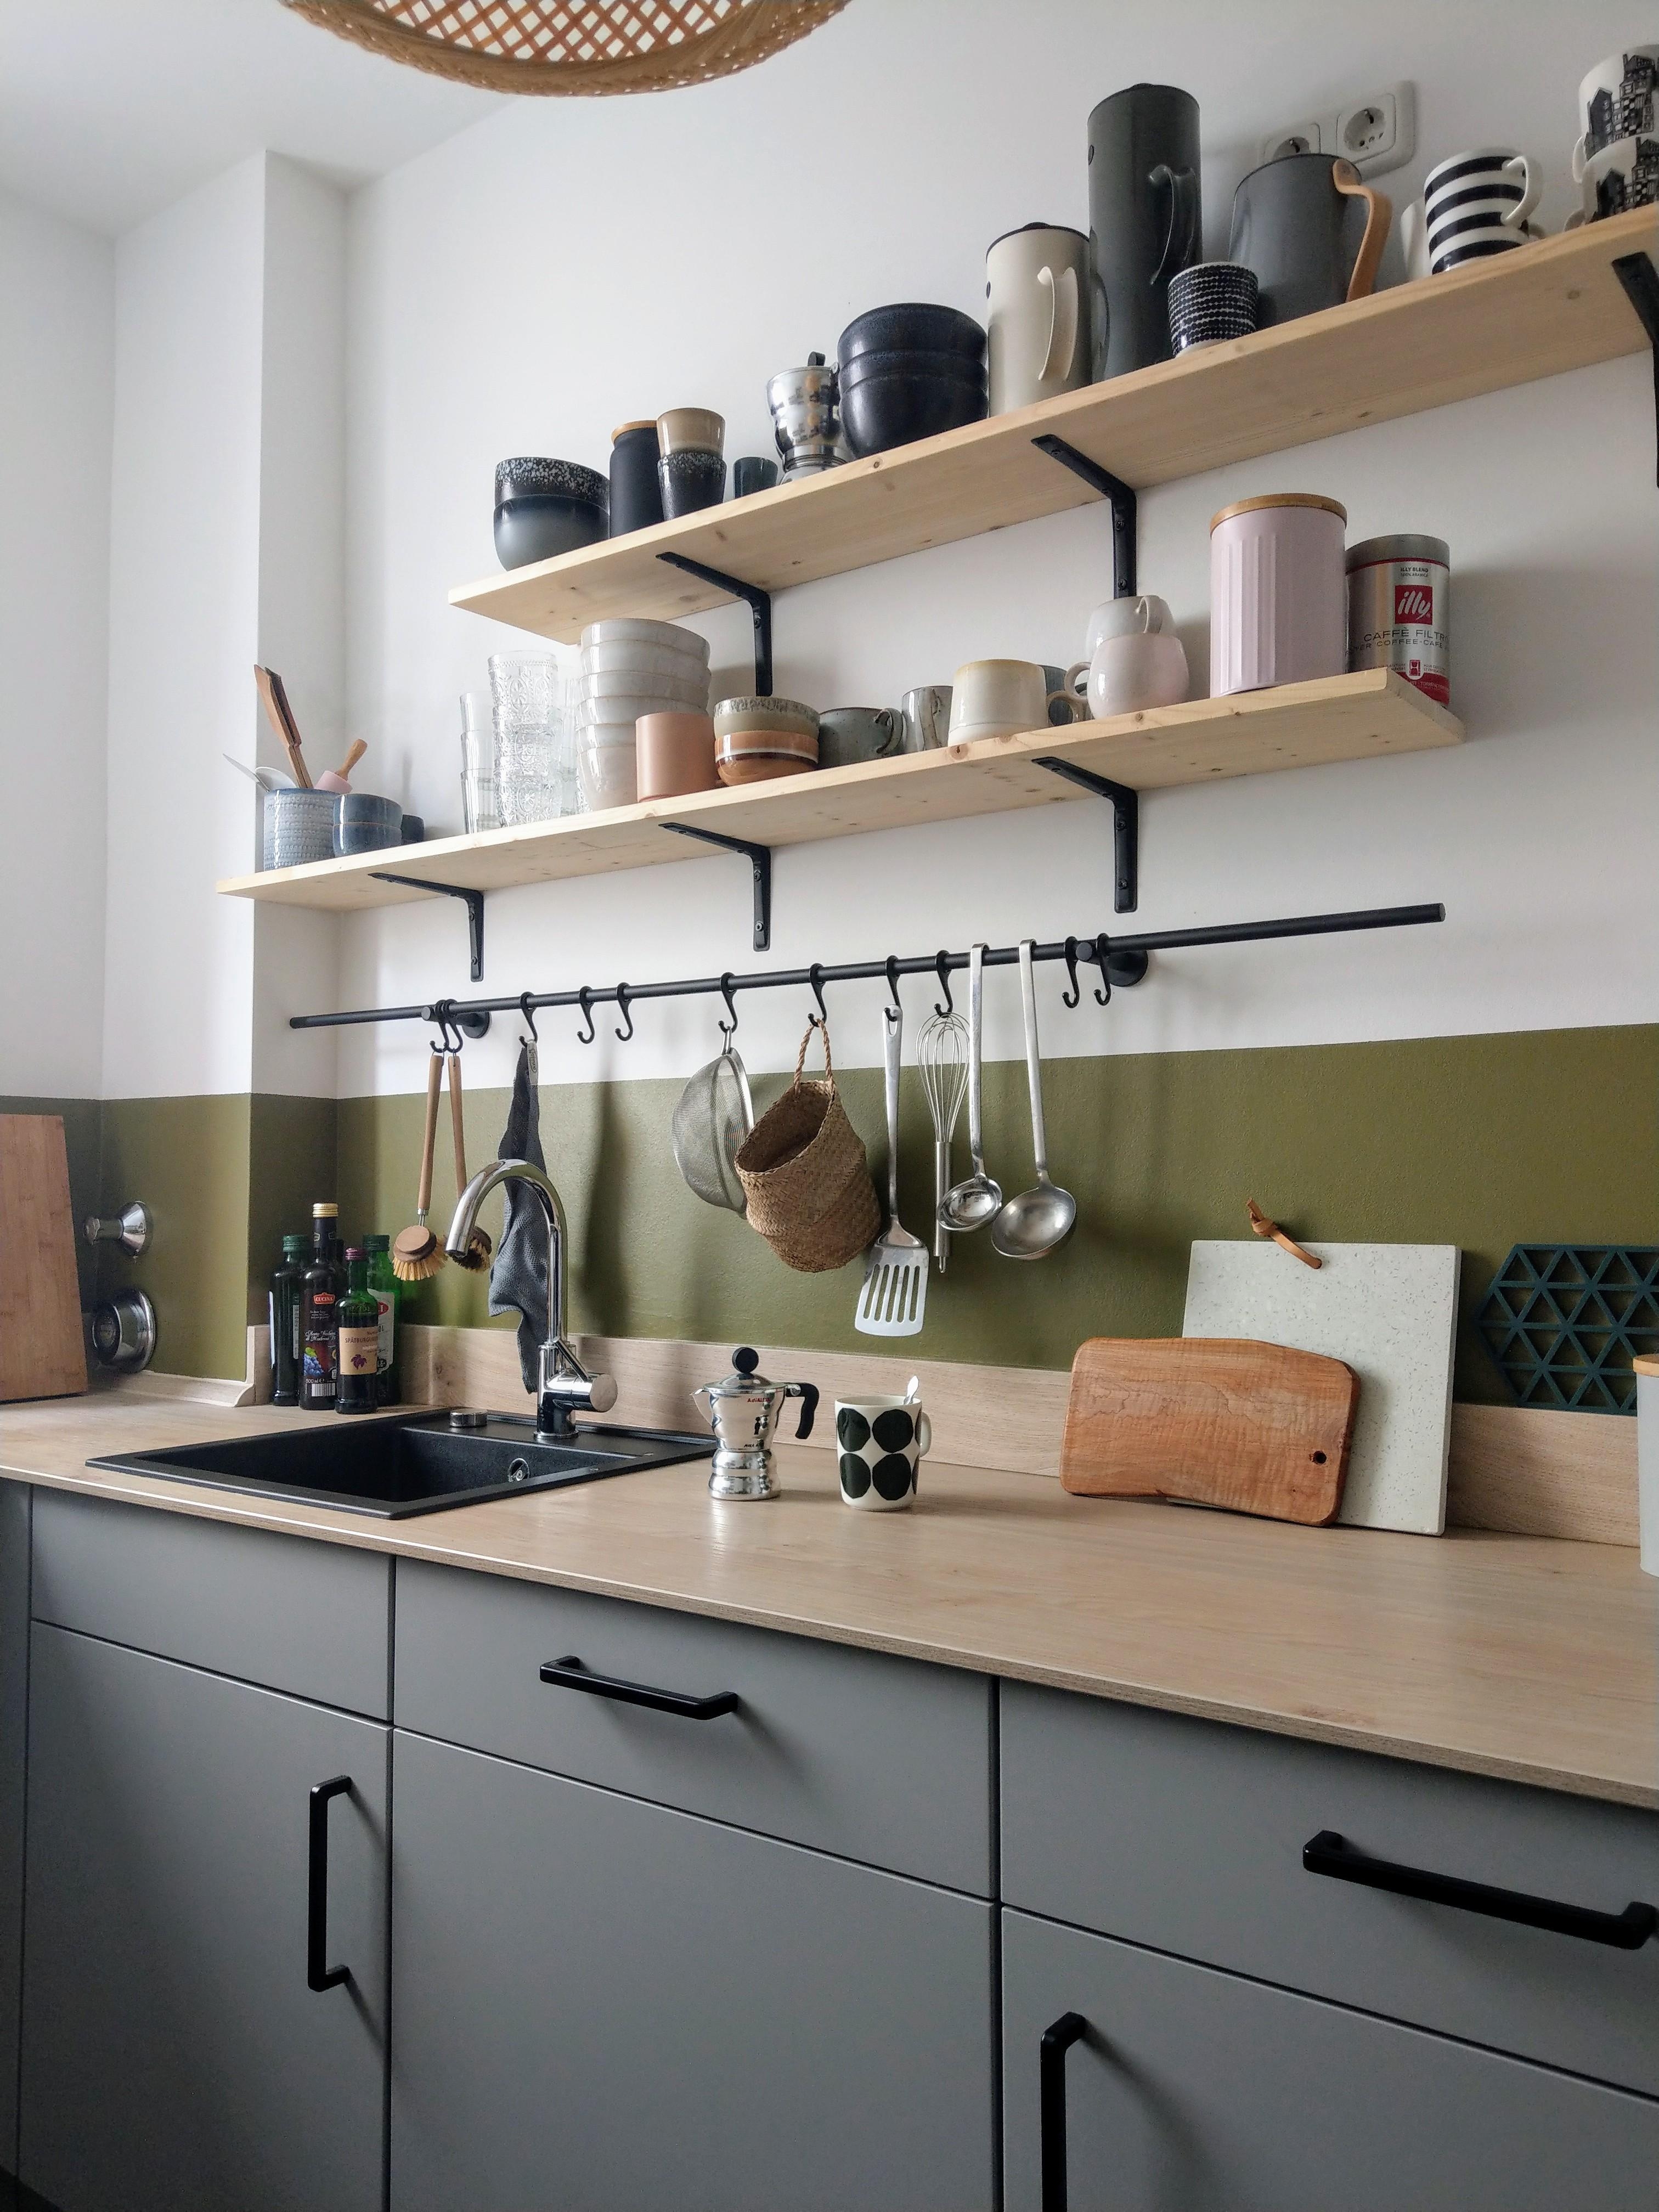 Die Küche hat einen neuen Touch erhalten, gegen lästige Flecken an der Wand #Küche #farbe #grün #kitcheninspo